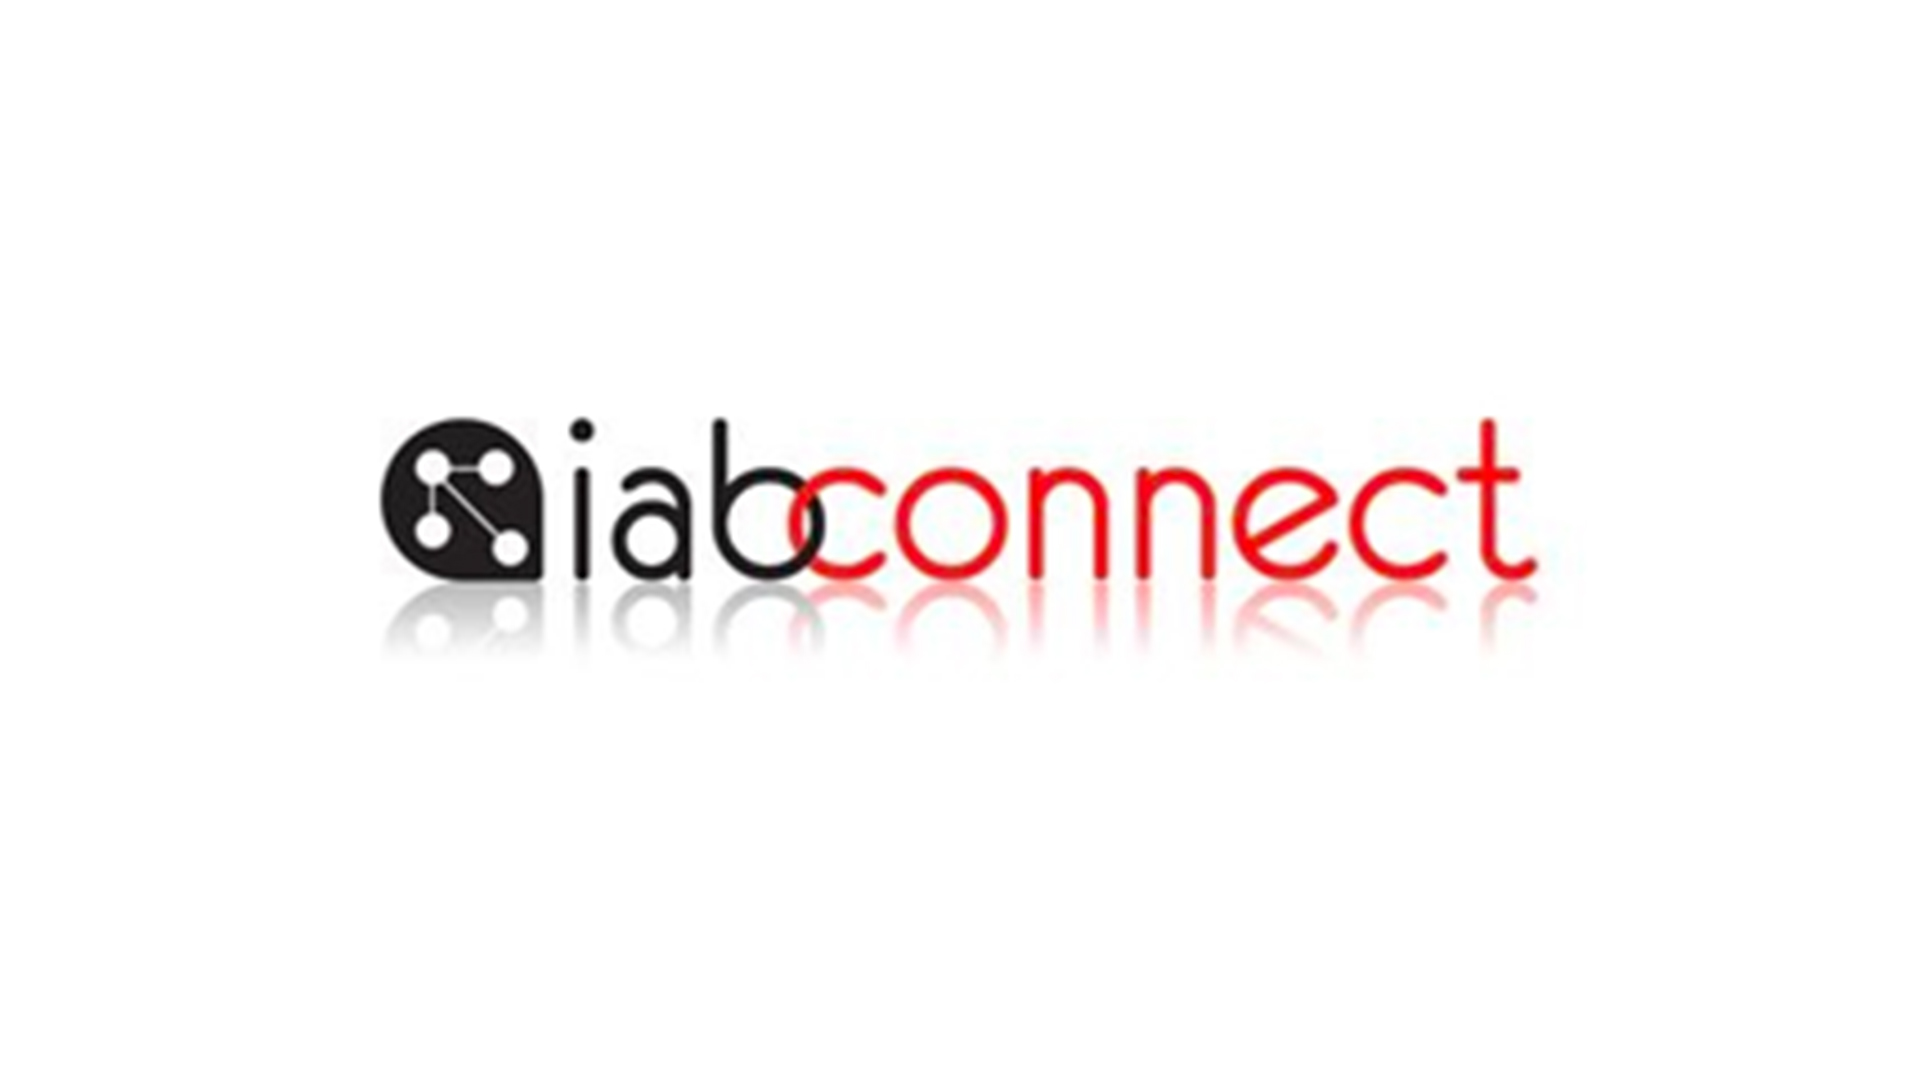 IAB Connect’in bu ayki teması “Çerezsiz Dünya” oldu.